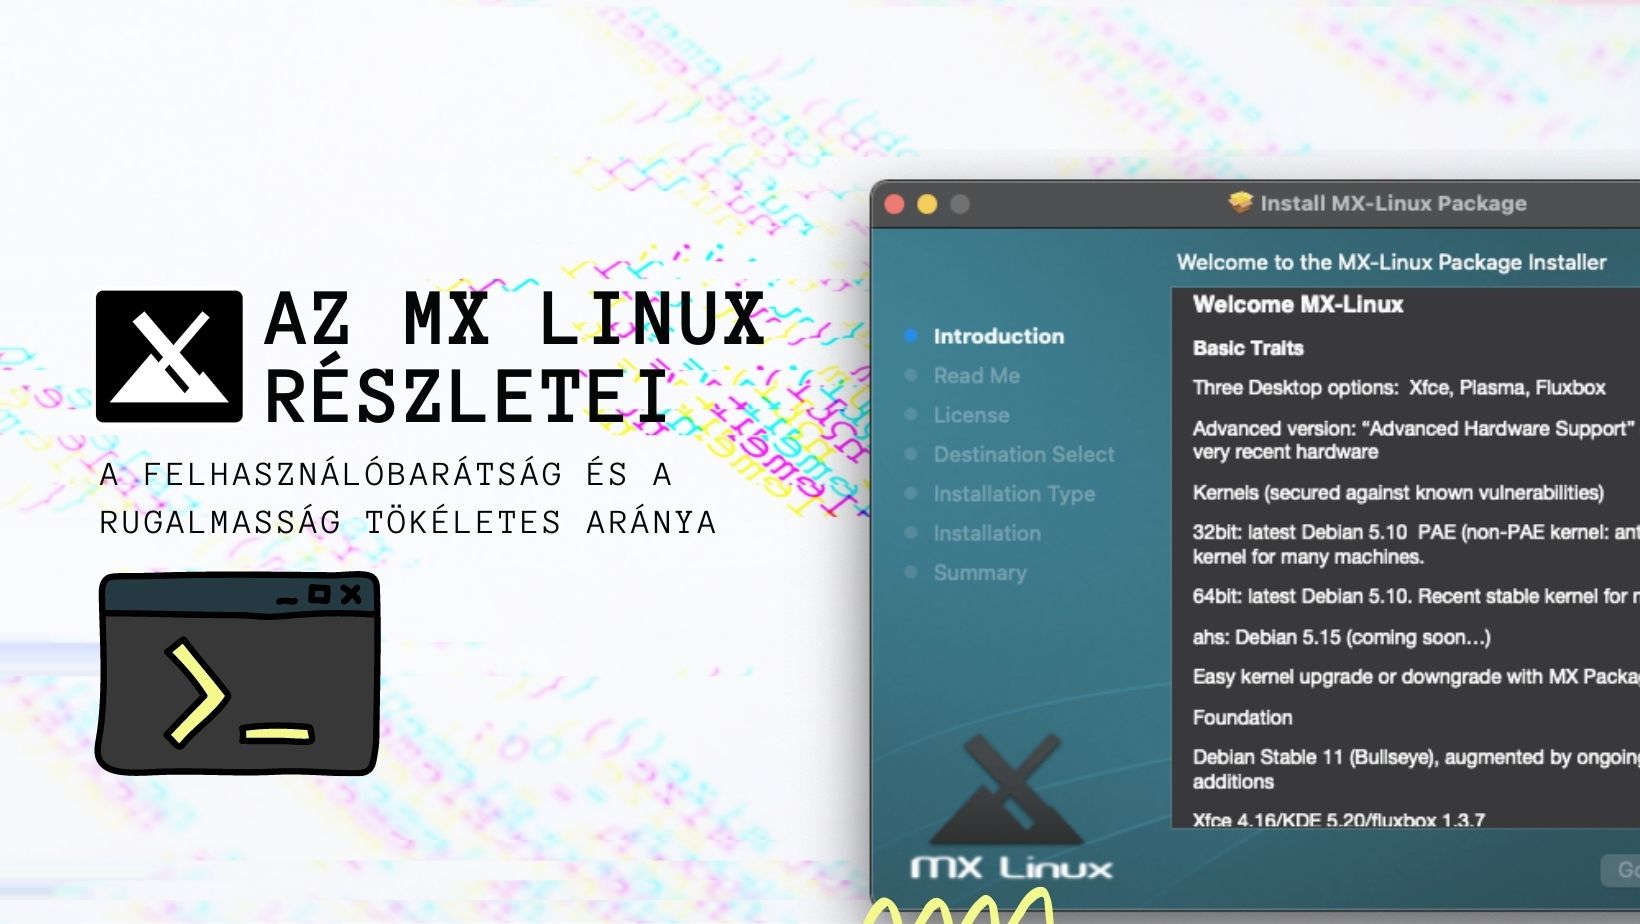 MX Linux - A felhasználóbarátság és a rugalmasság tökéletes aránya